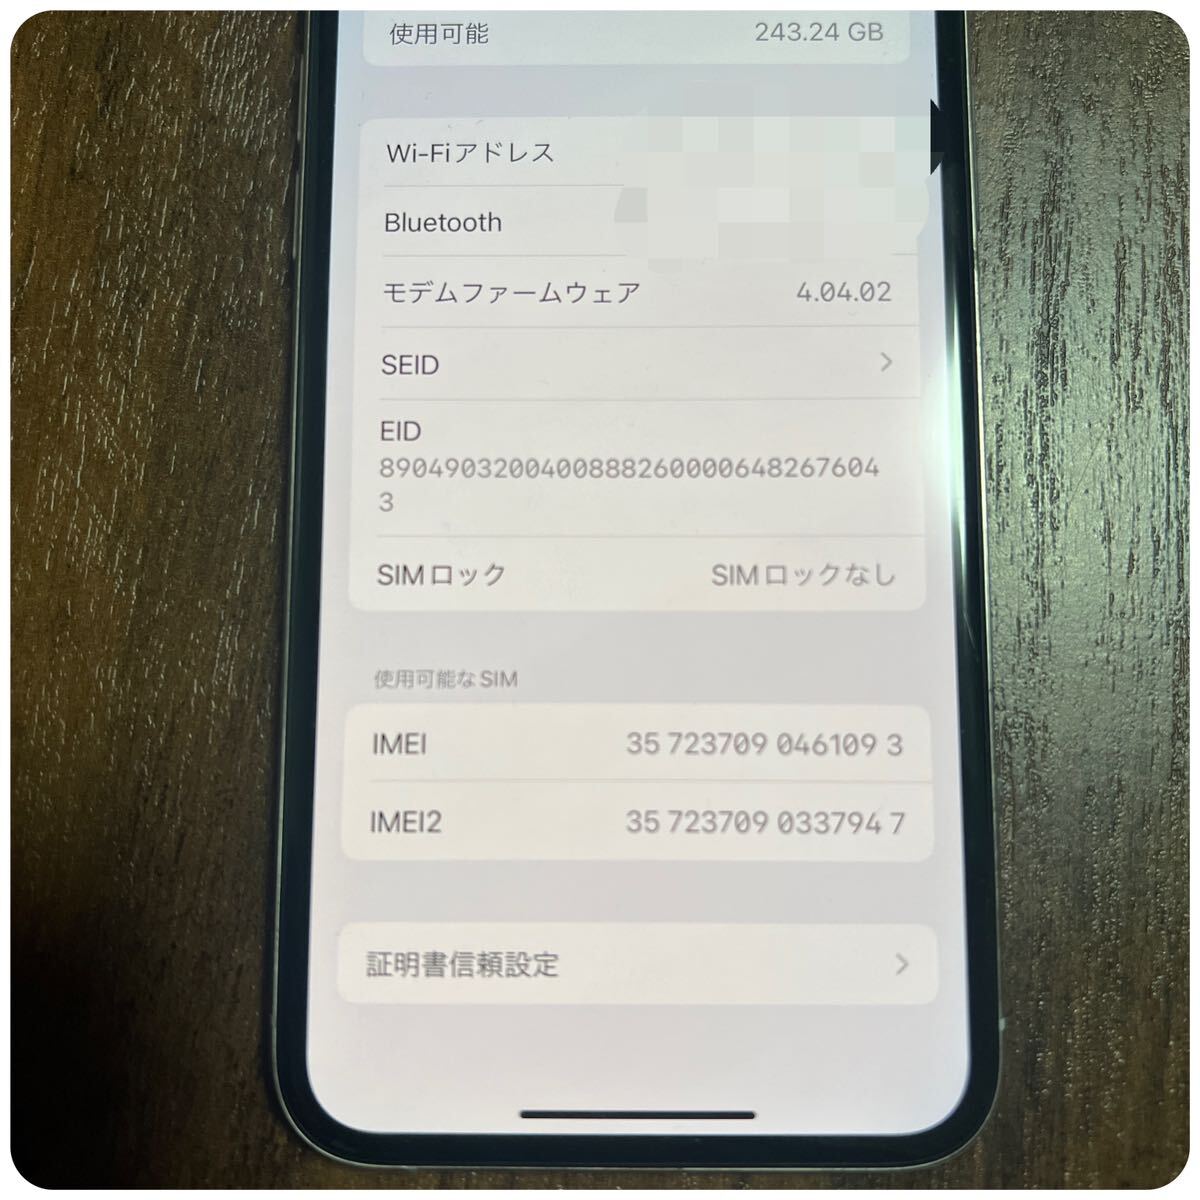 1 иен ~ Apple Apple iPhone Xs 256GB MTE12J/A A2098 белый SIM разблокирован первый период . settled сеть ограничение использования 0 смартфон корпус XS прекрасный товар 